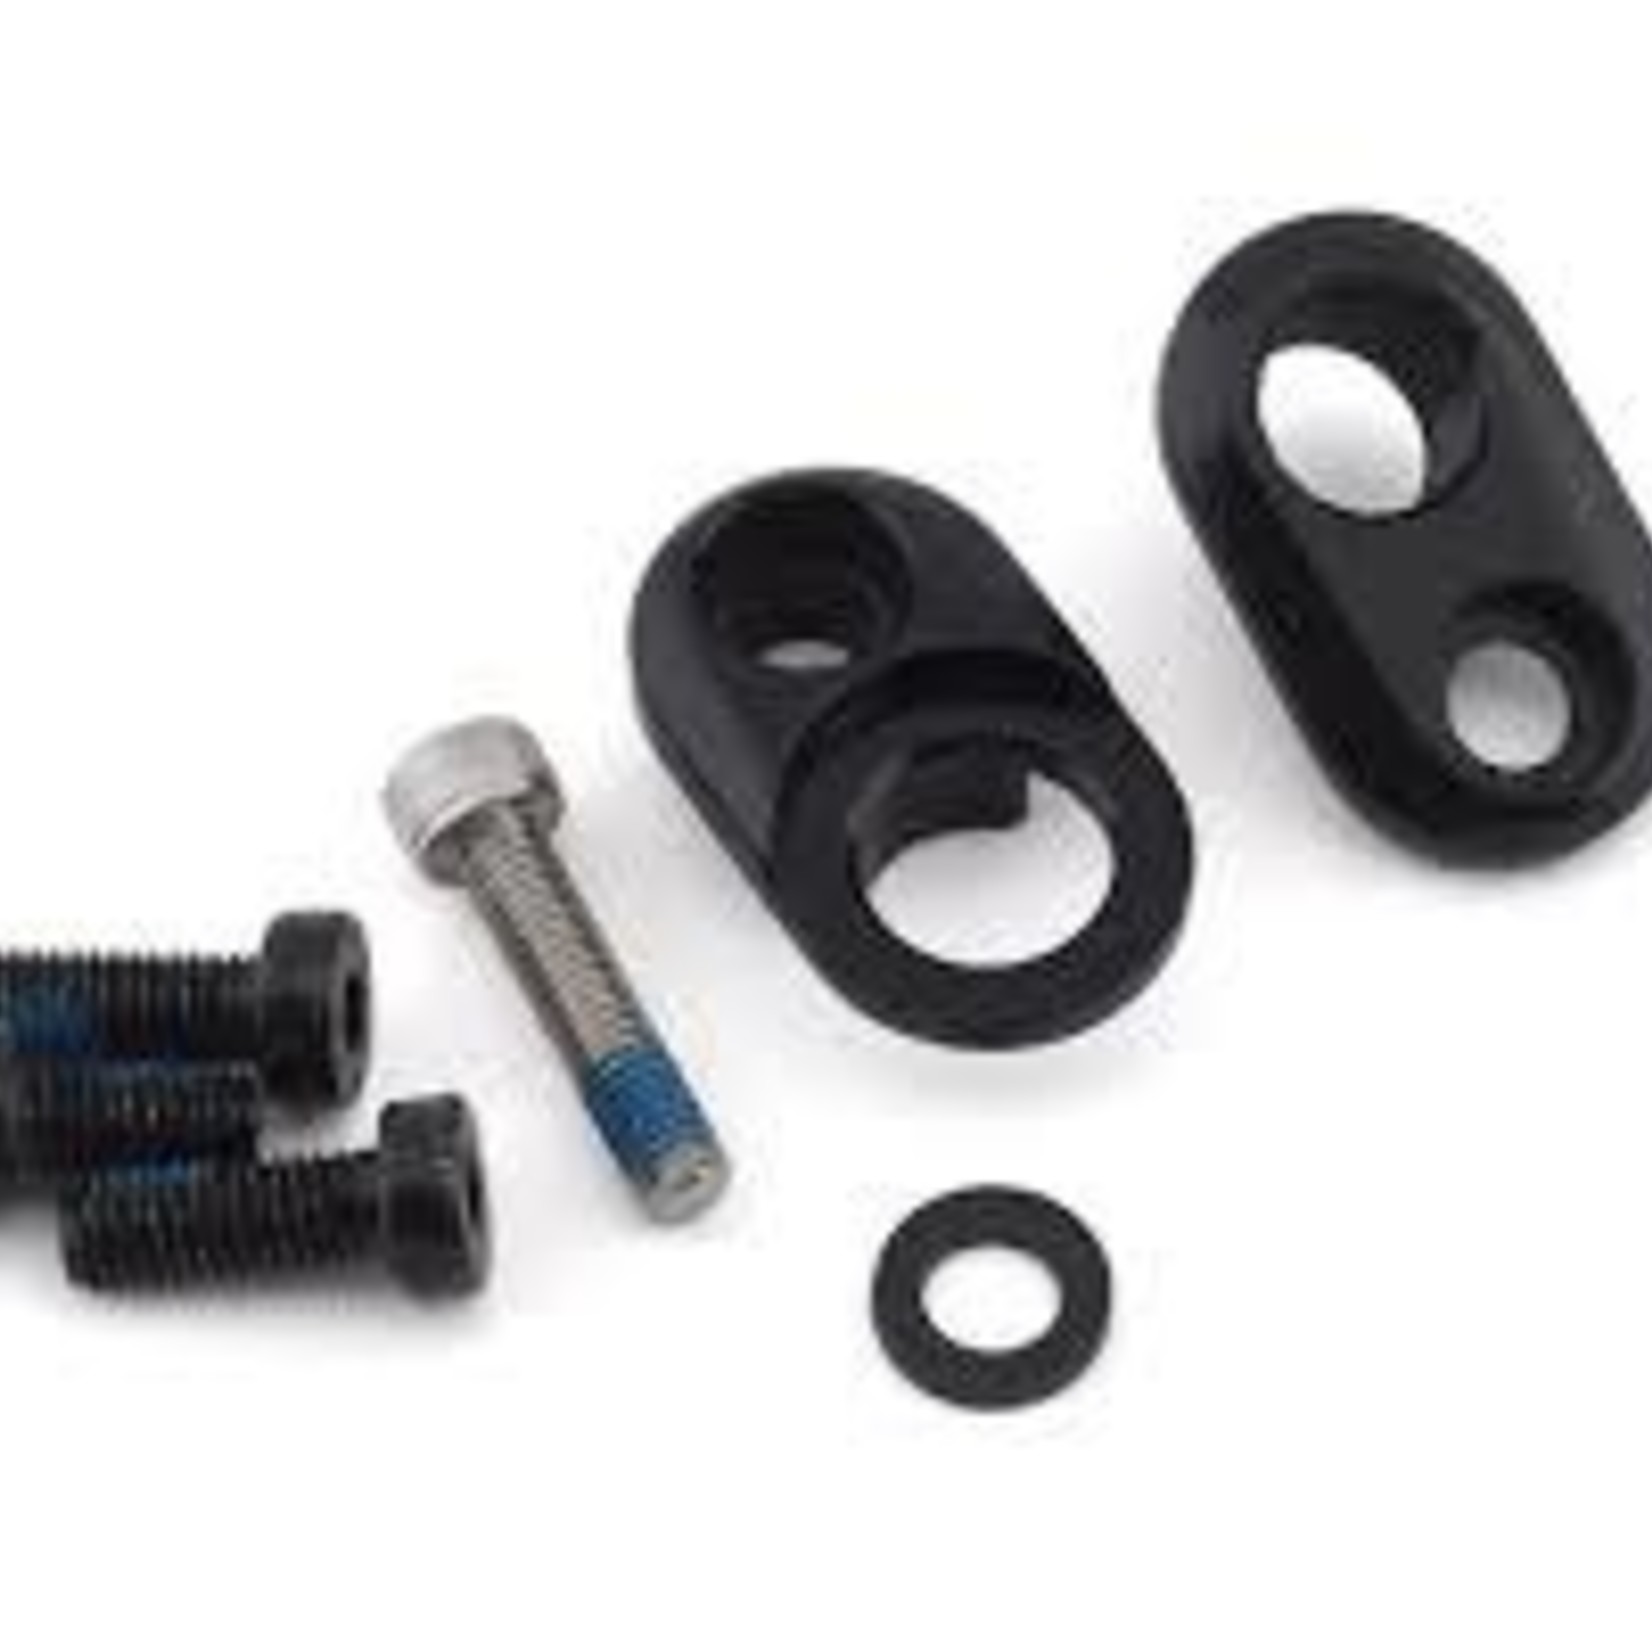 Specialized Derail Hanger Spec Fuse Drop Out Slider Hardware Kit